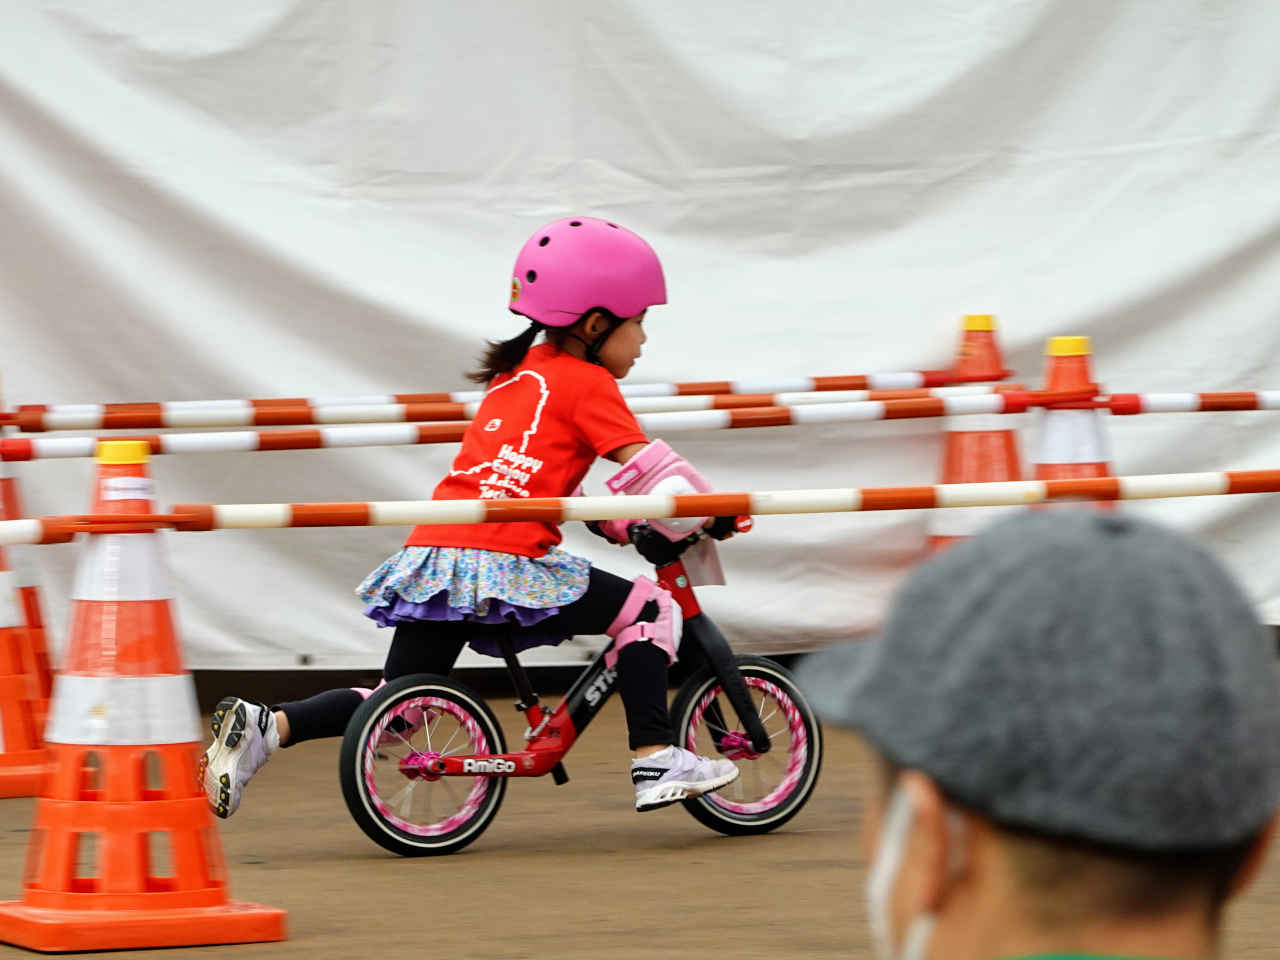 ストライダー大会のジャパンカップキックバイク大会 予備予選で快走する5歳の女の子